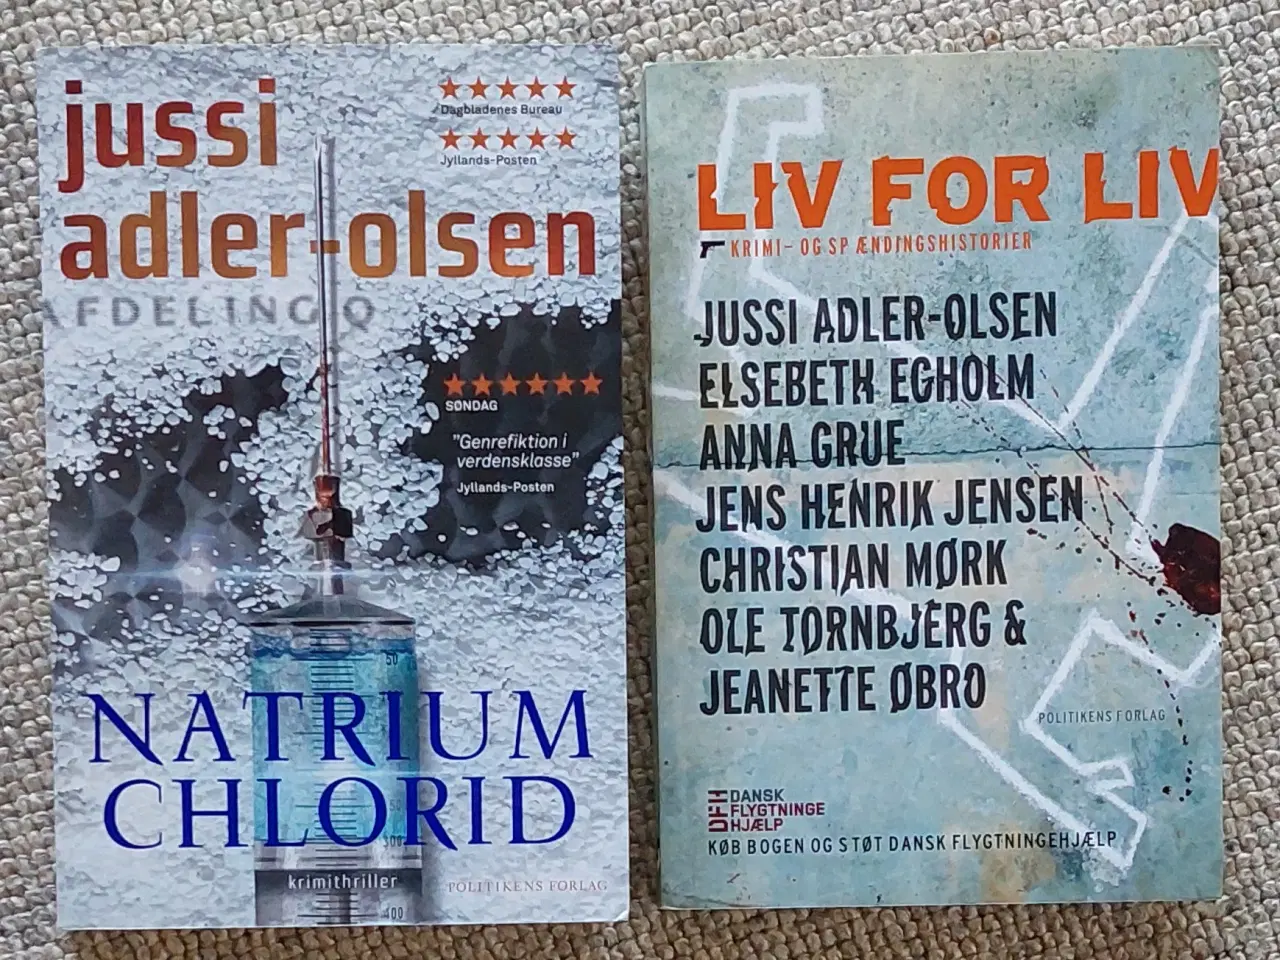 Billede 1 - Natrium Chlorid, Liv for liv af Jussi Adler-Olsen 